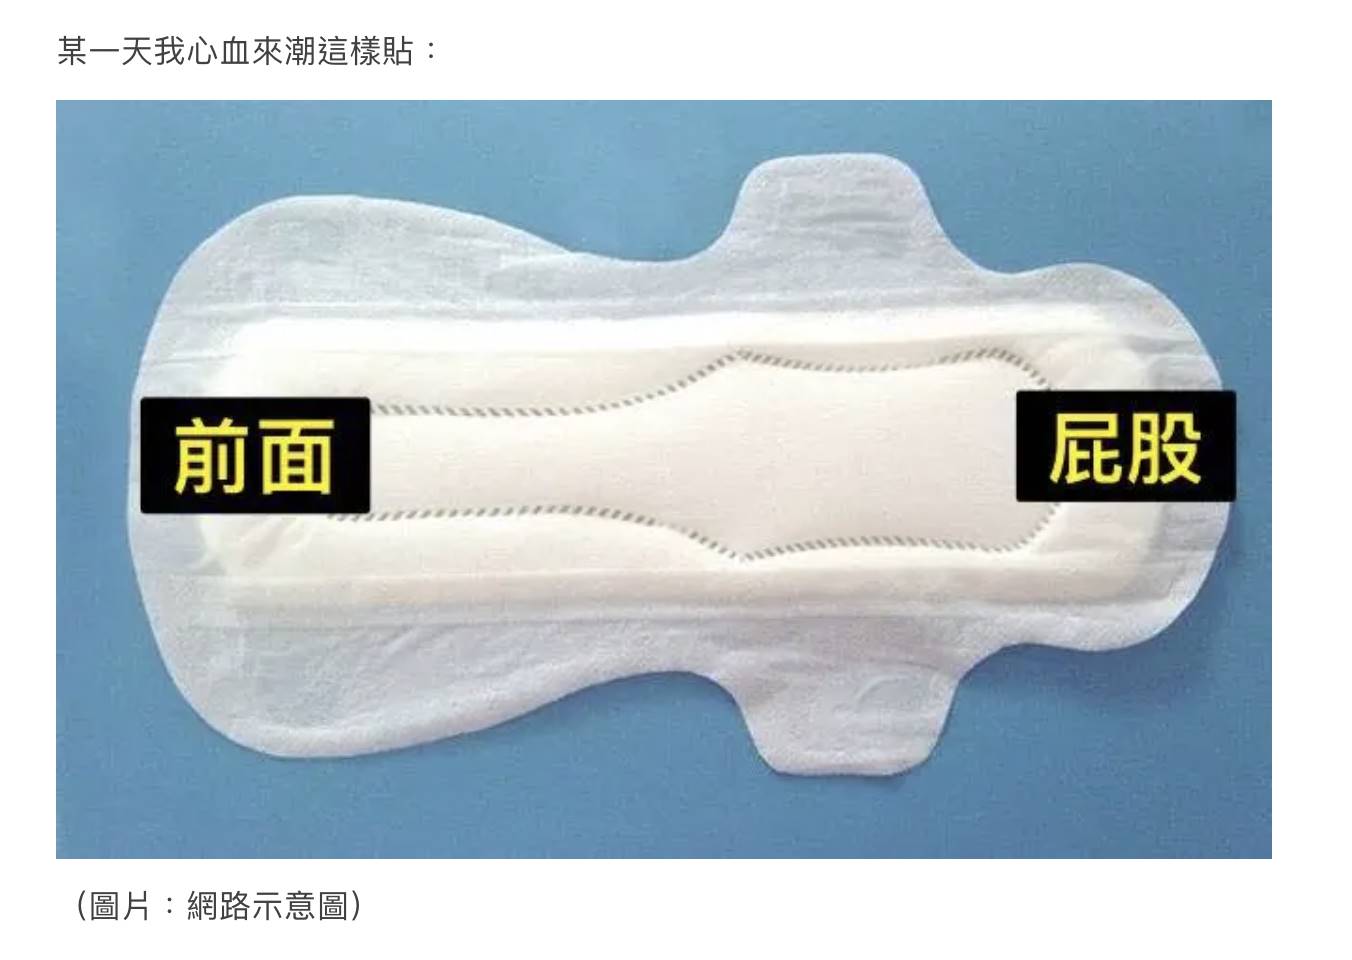 女網友在Dcard上分享衛生棉反向貼法，就能避免經血外流的情況。